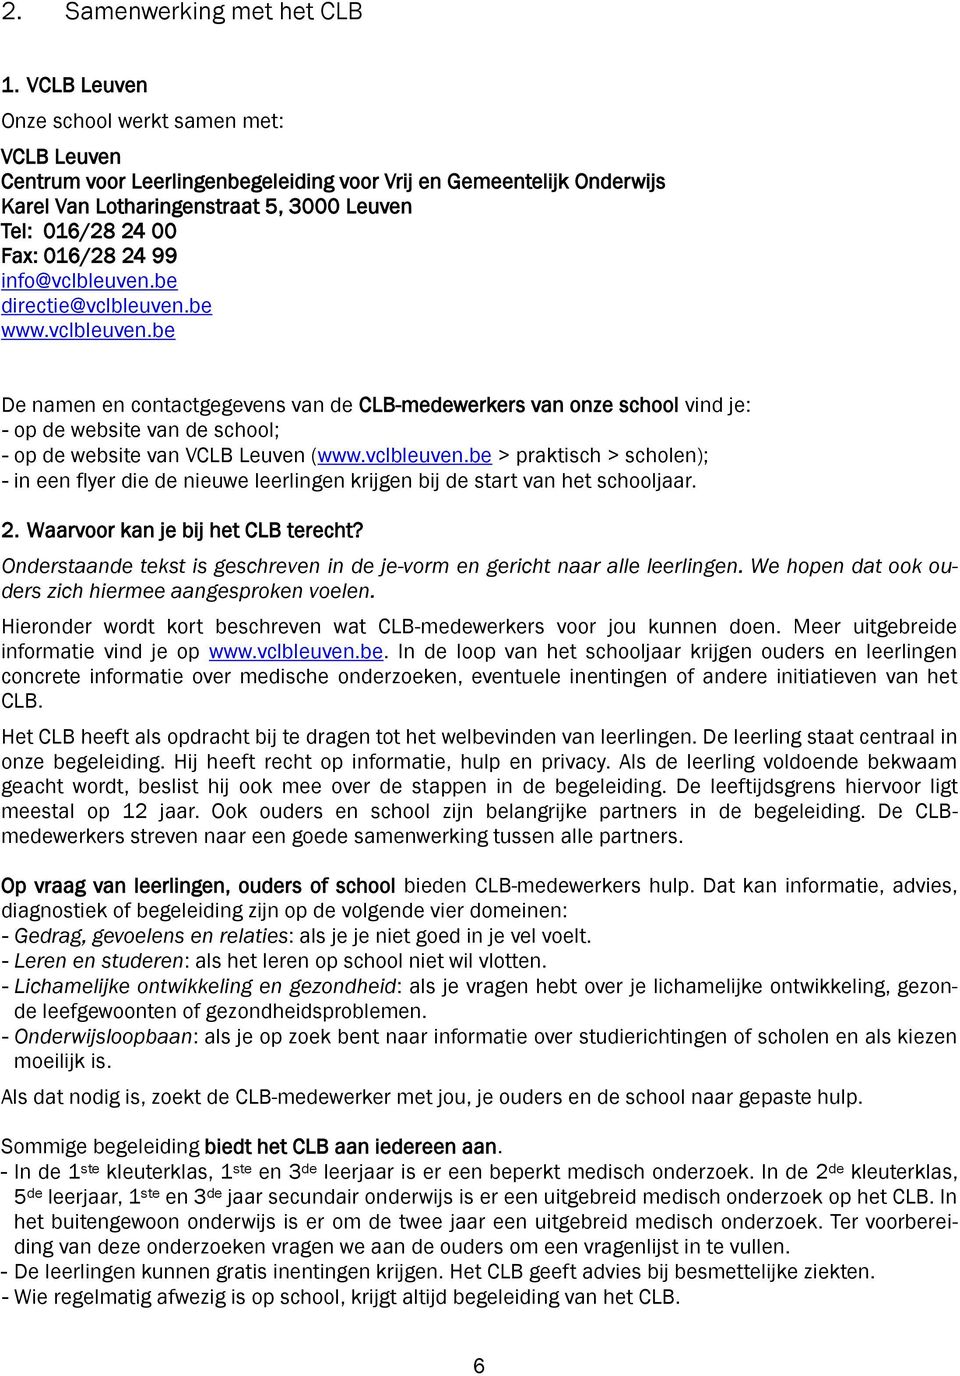 99 info@vclbleuven.be directie@vclbleuven.be www.vclbleuven.be De namen en contactgegevens van de CLB-medewerkers van onze school vind je: - op de website van de school; - op de website van VCLB Leuven (www.